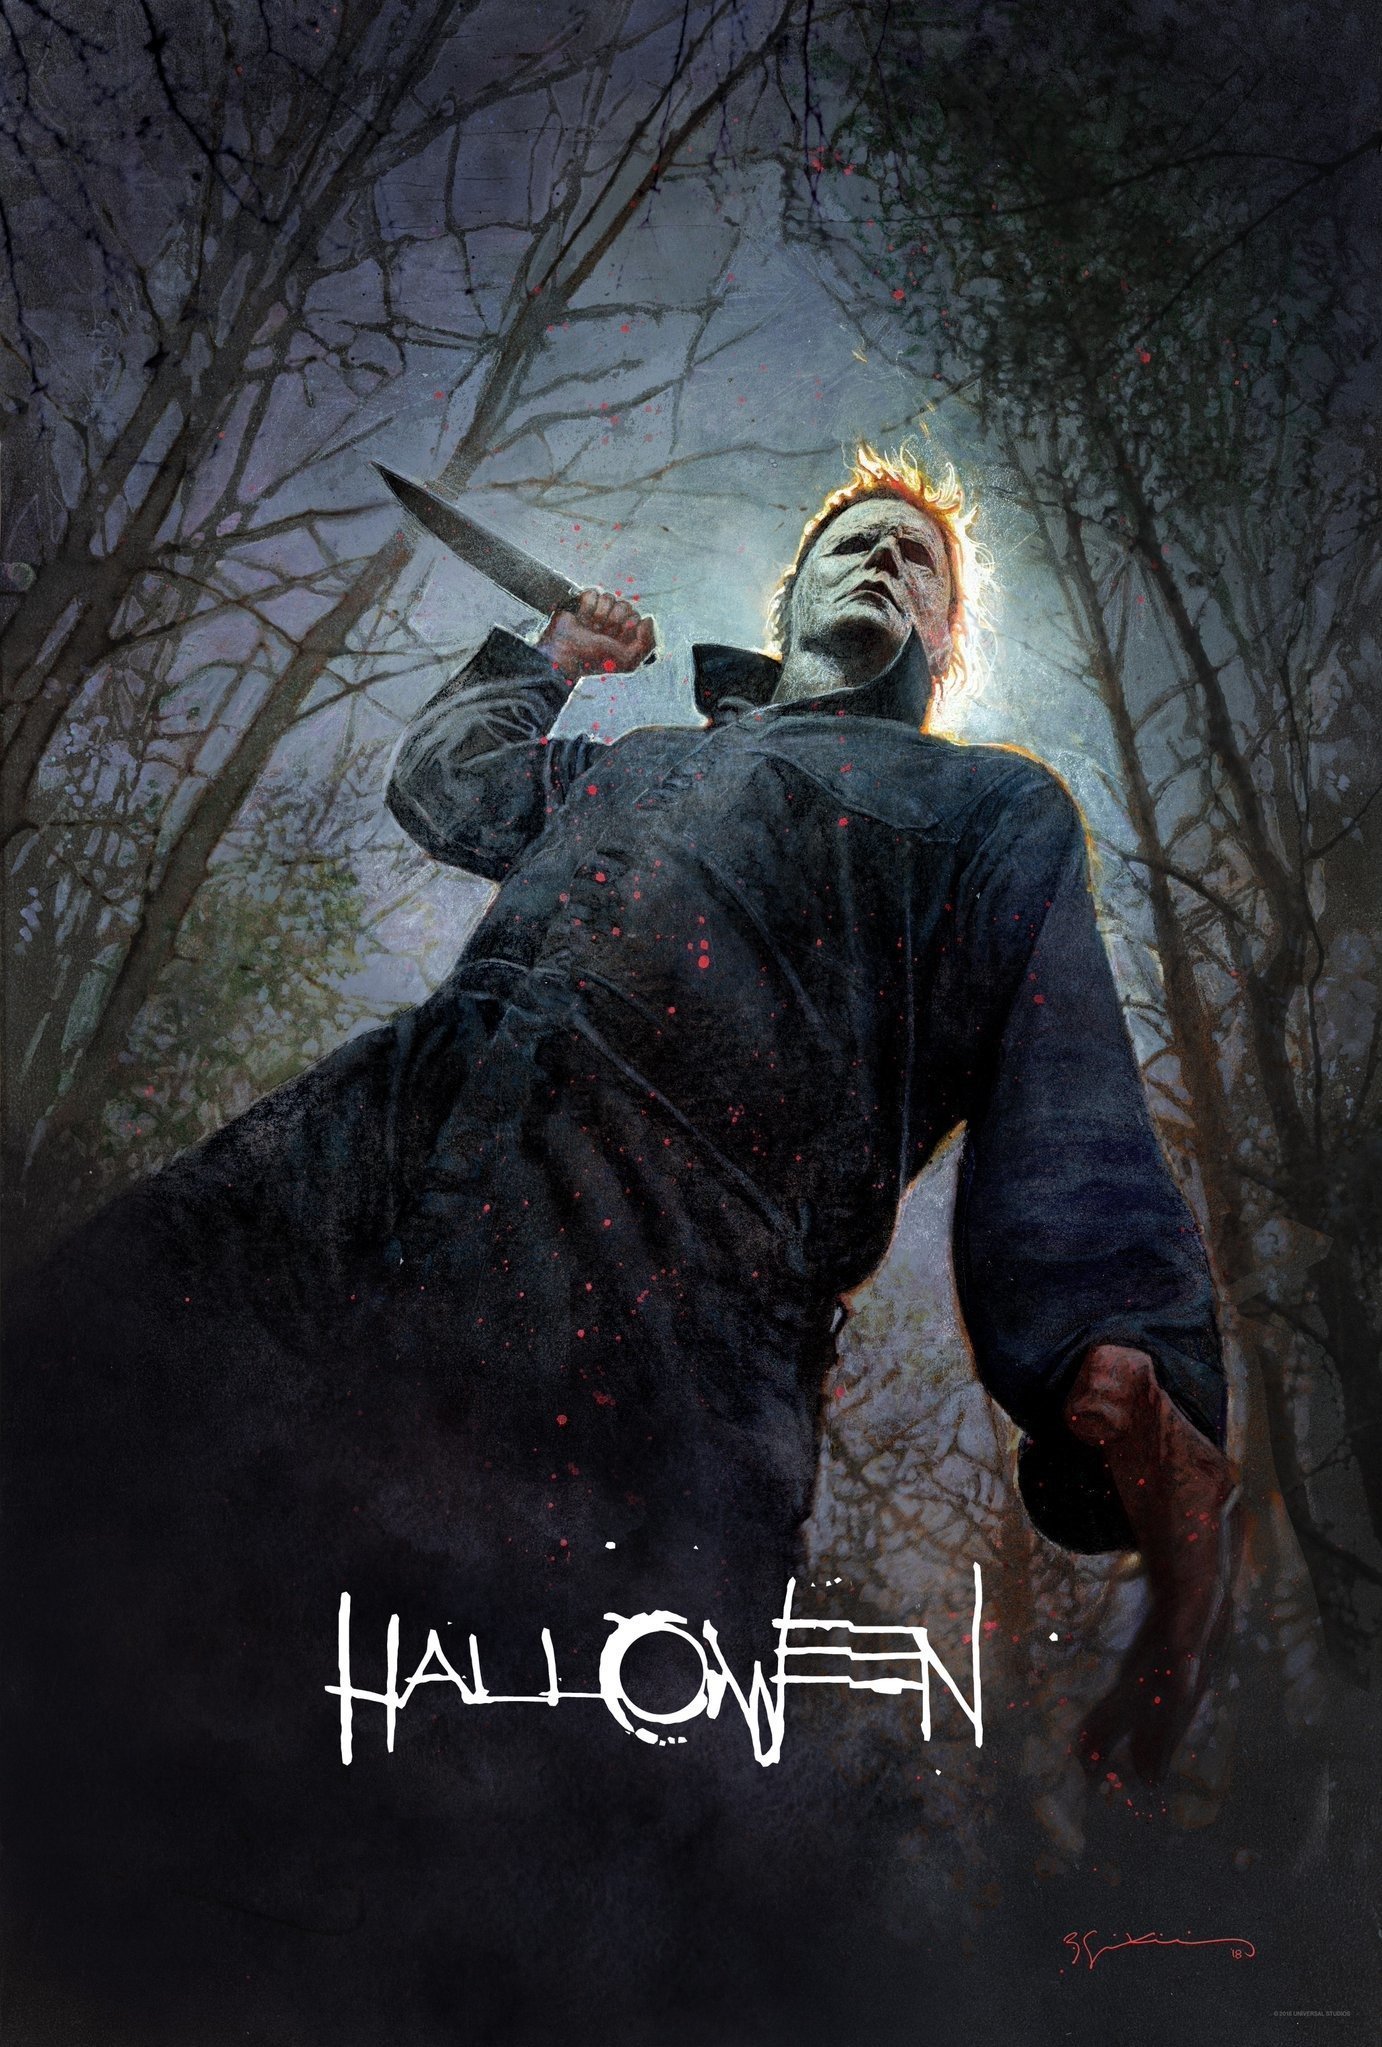 Poster du film Halloween dessiné par Bill Sienkiewicz avec Michael Myers